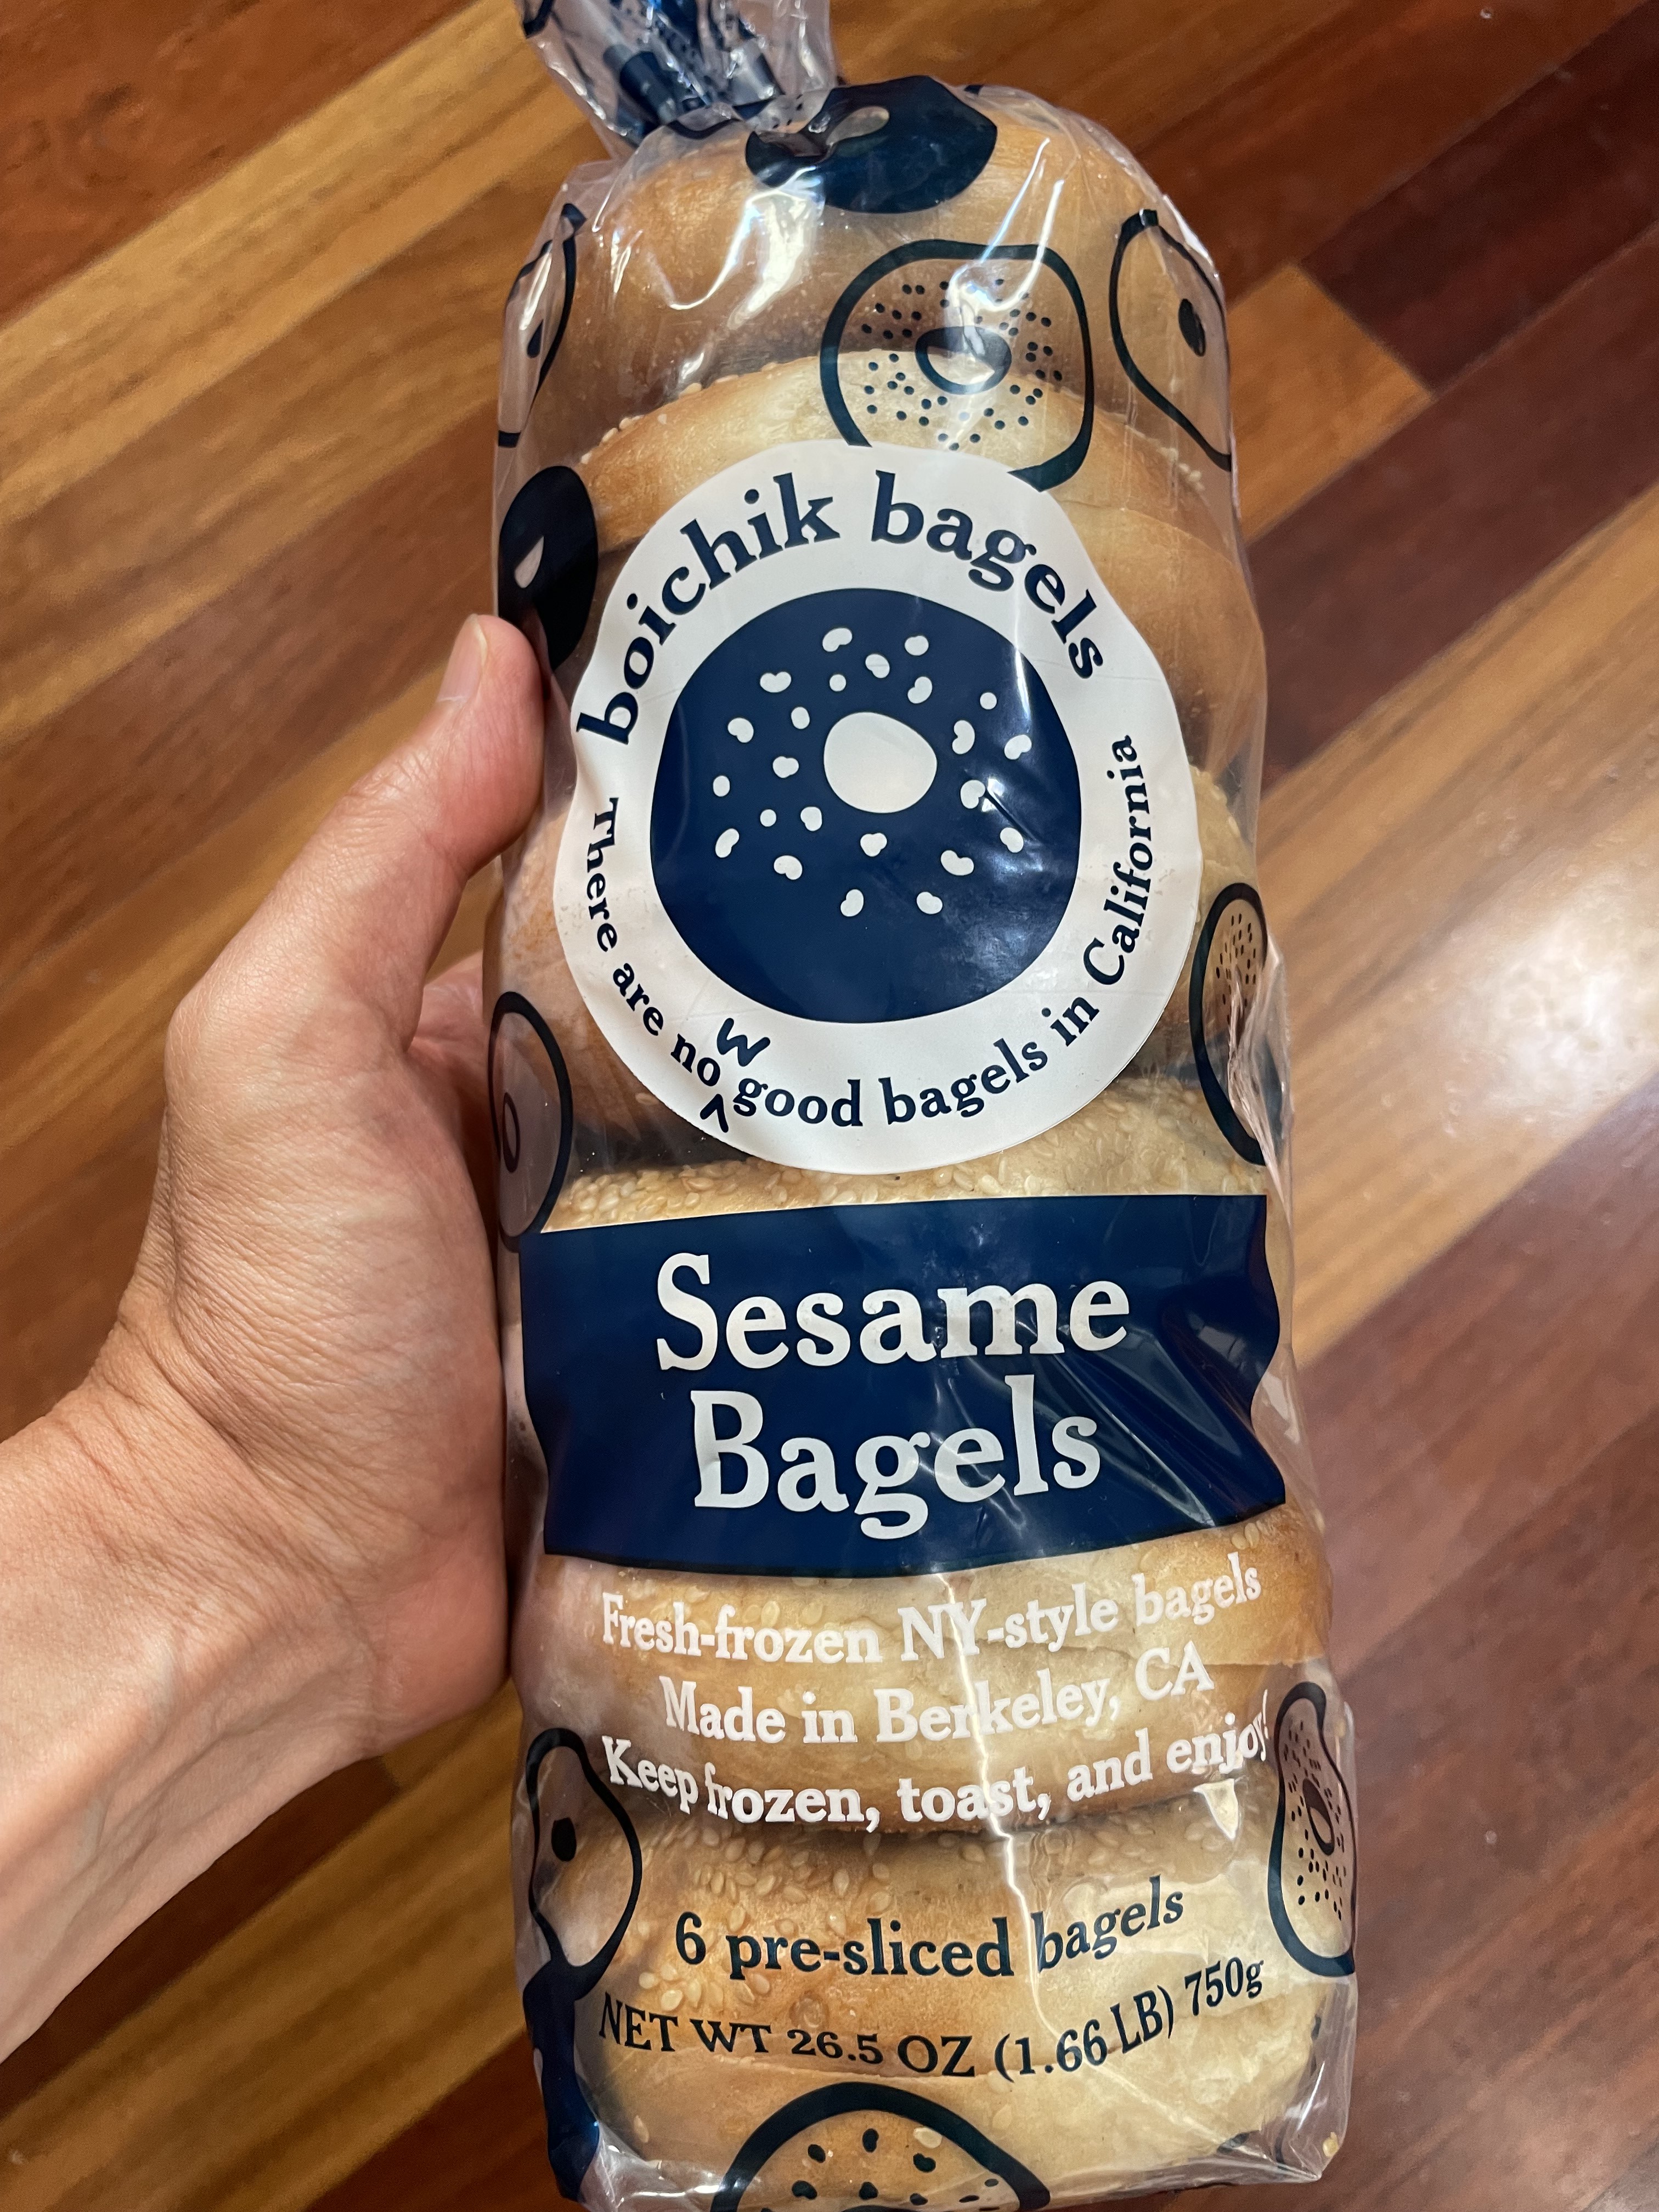 Sesame Bagels by Boichik bagels